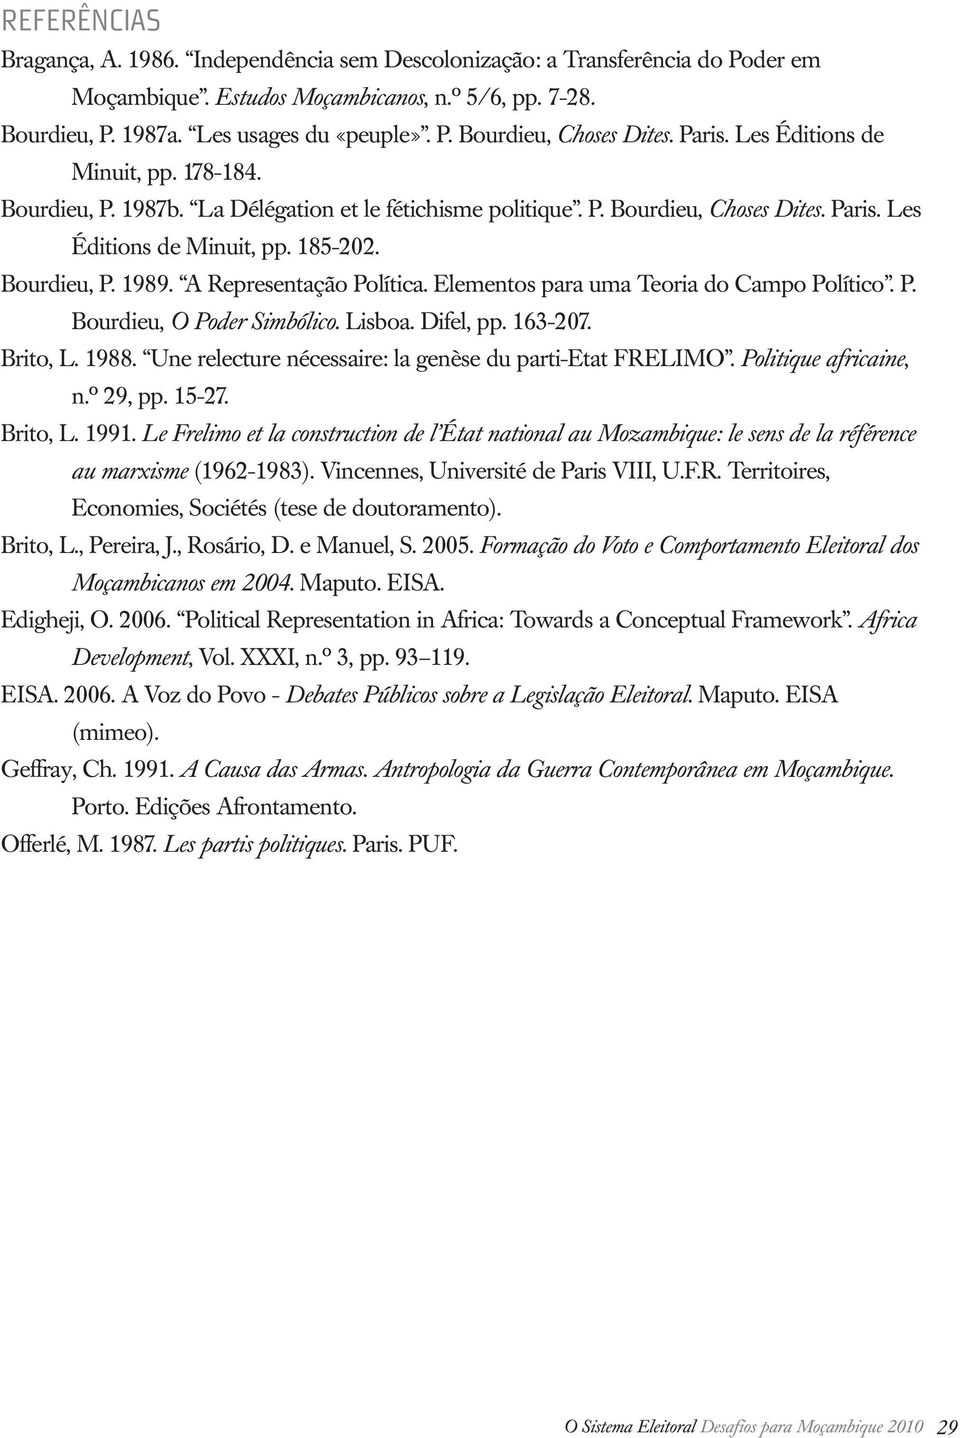 A Representação Política. Elementos para uma Teoria do Campo Político. P. Bourdieu, O Poder Simbólico. Lisboa. Difel, pp. 163-207. Brito, L. 1988.